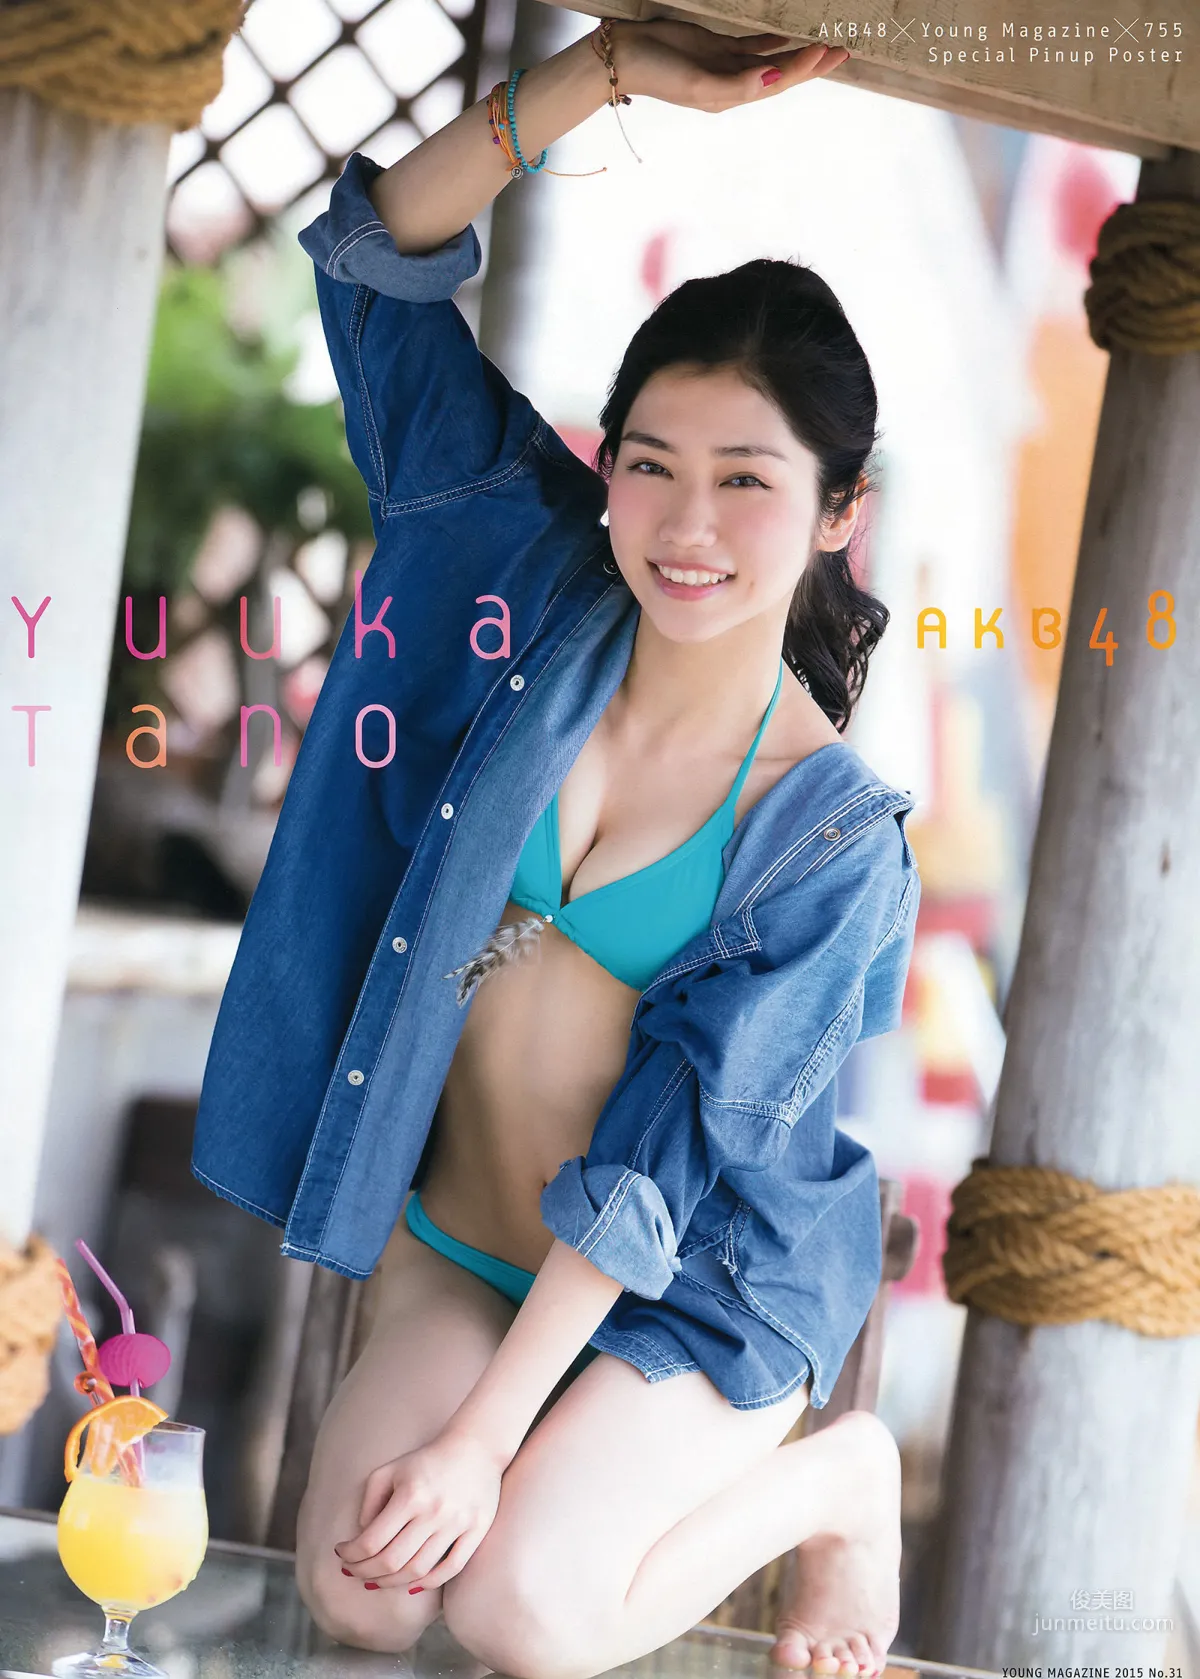 [Young Magazine] 大川藍 田野優花 村山彩希 2015年No.31 写真杂志7